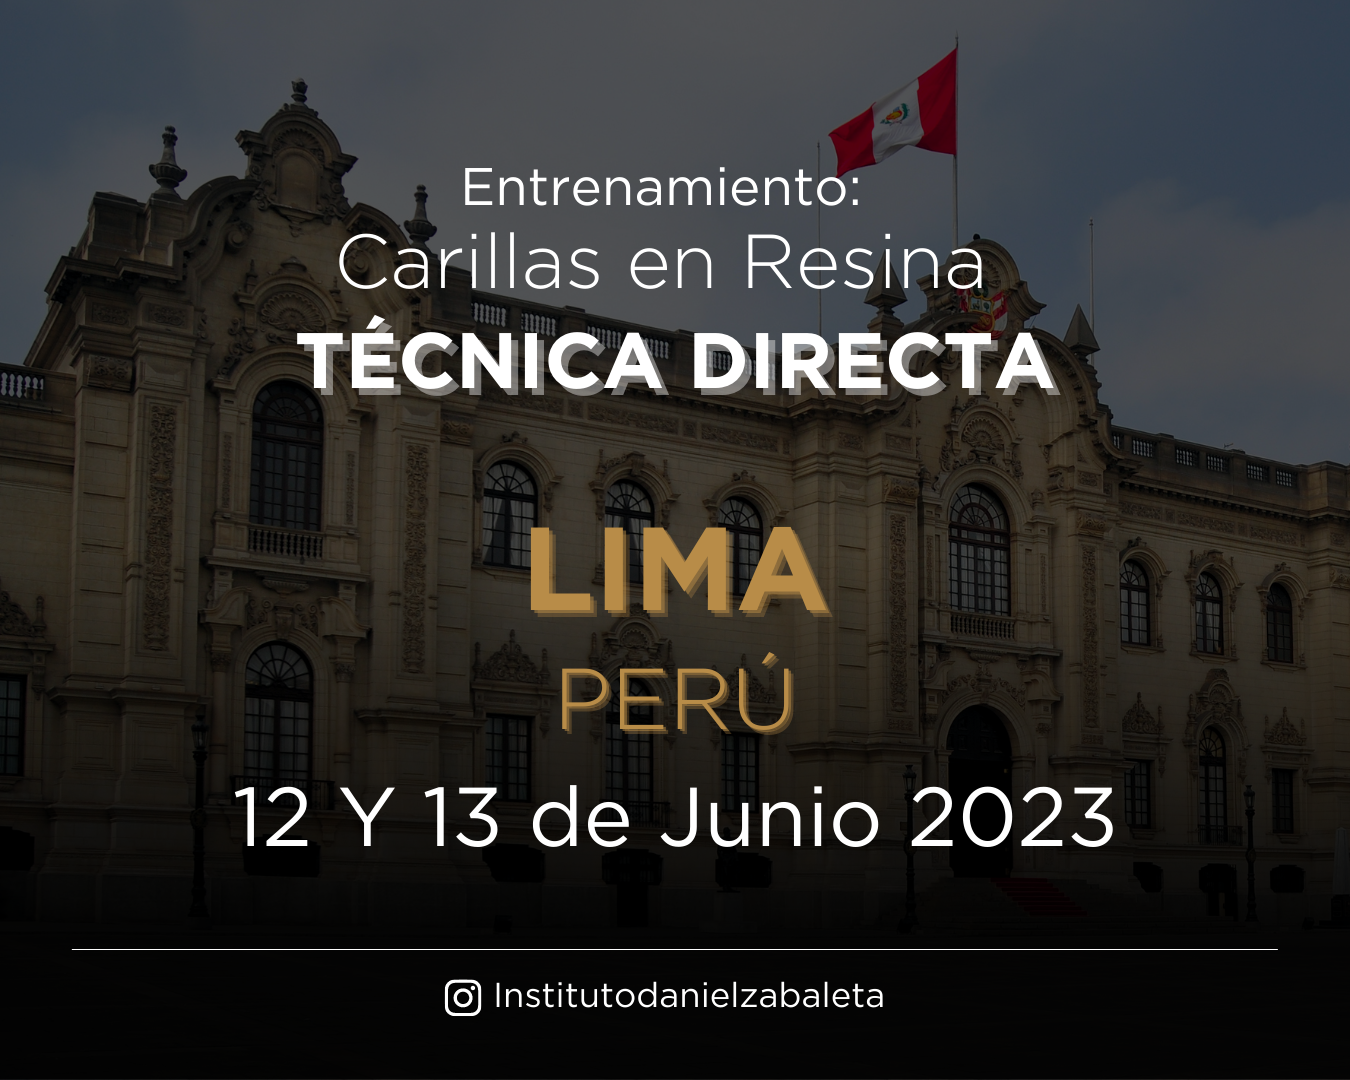 Website Entrenamiento Lima (1350 × 1080 px)